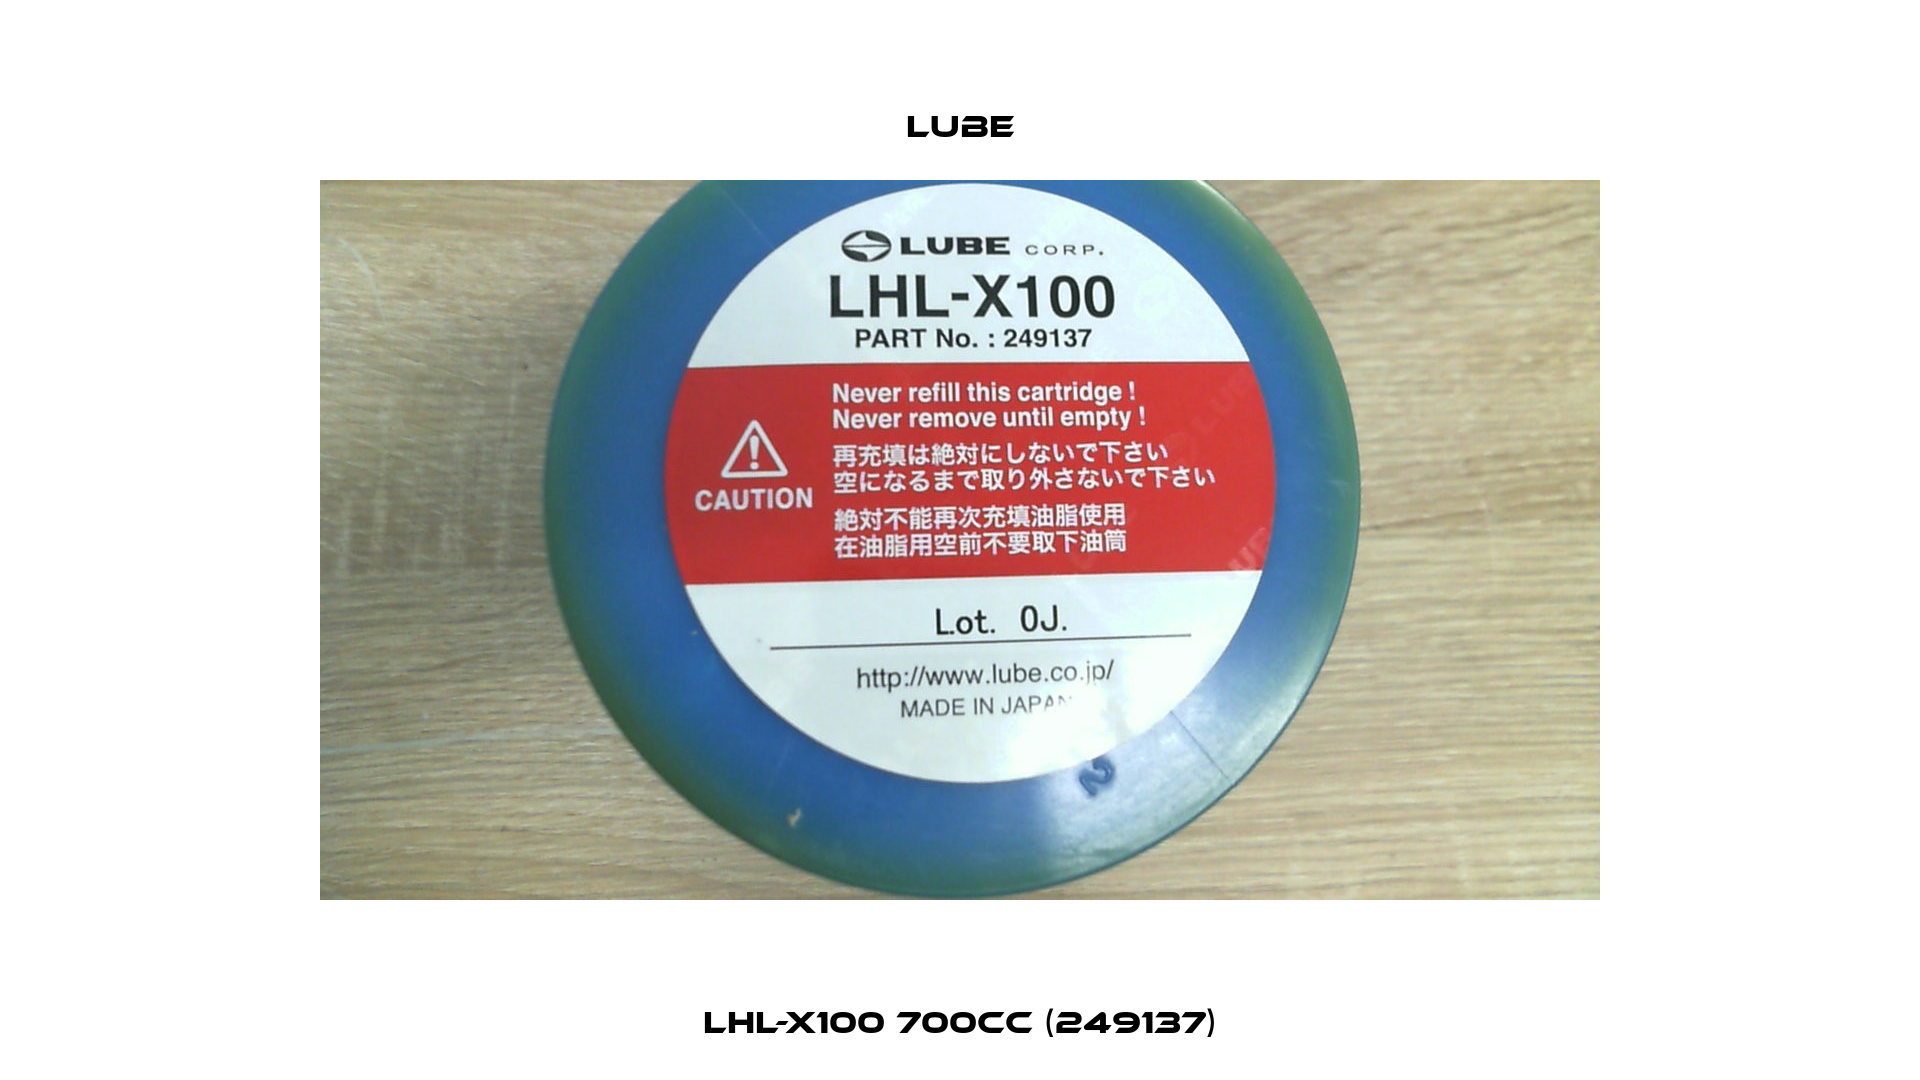 LHL-X100 700cc (249137) Lube